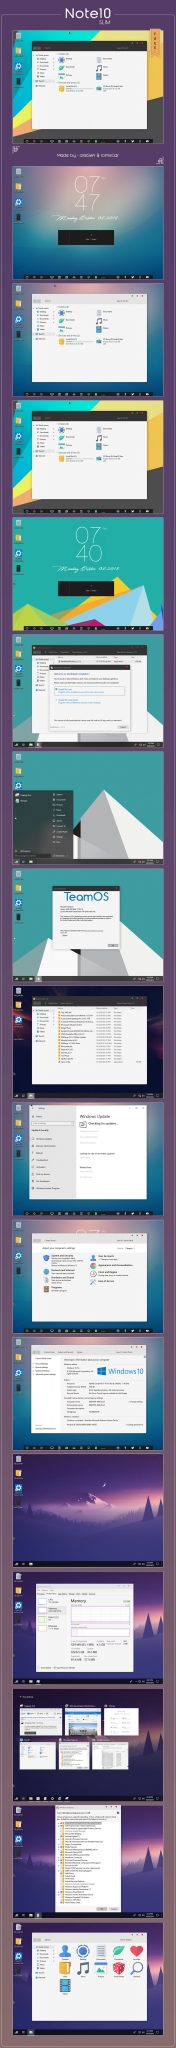 تحميل نسخة مخففة من ويندوز Windows 10 للأجهزة الضعيفة 2